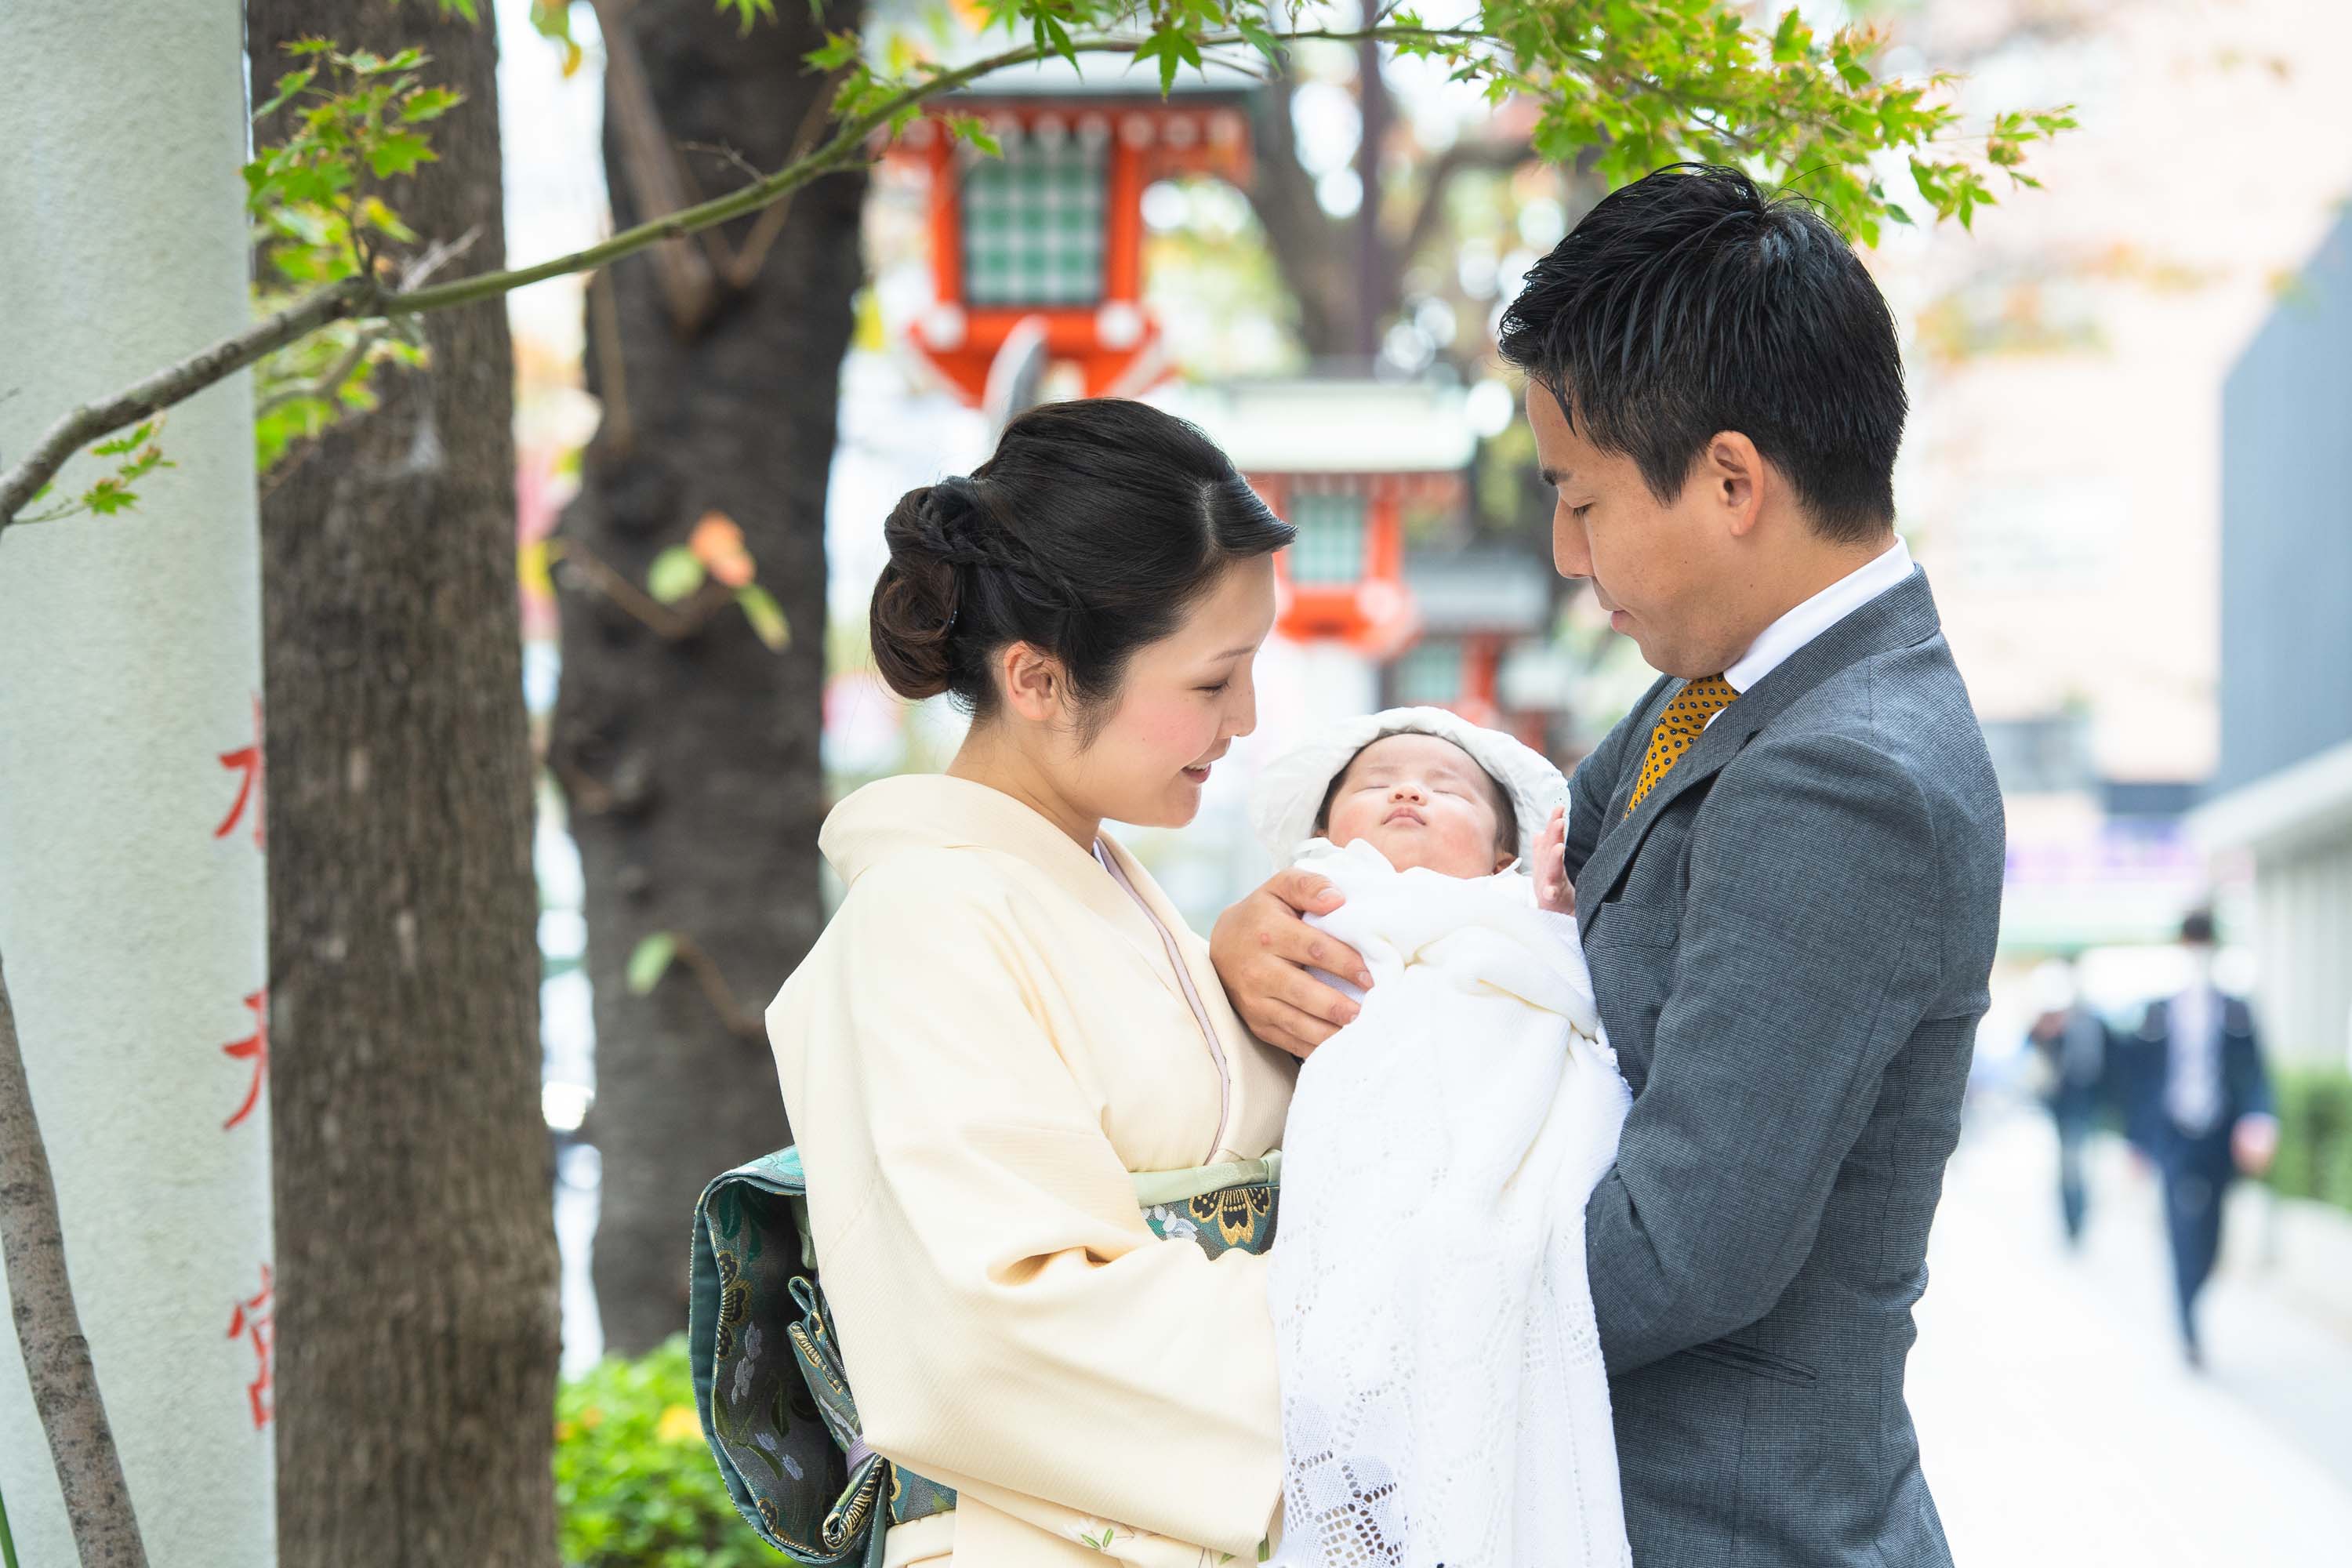 掛着を着た和装の女性に抱かれる赤ちゃんと横にいるスーツ姿の男性